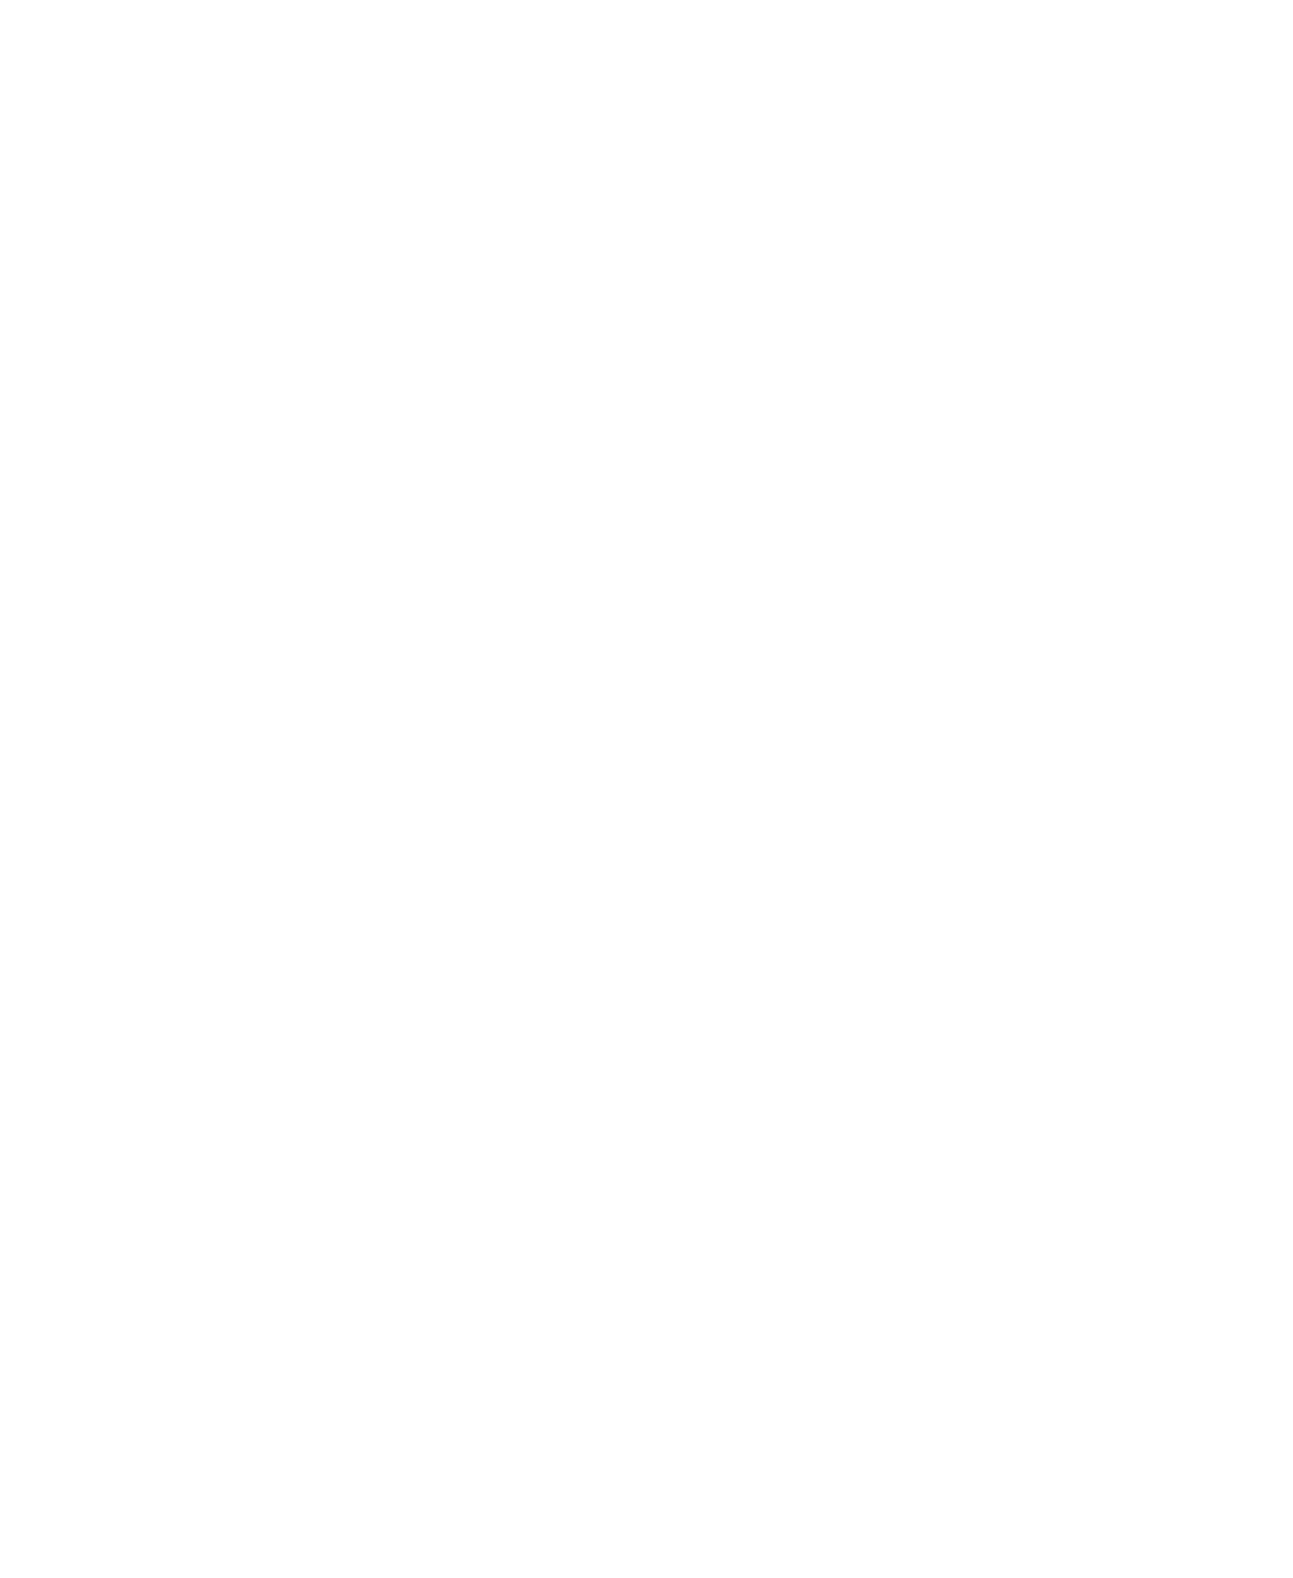 Naked Wines logo for dark backgrounds (transparent PNG)